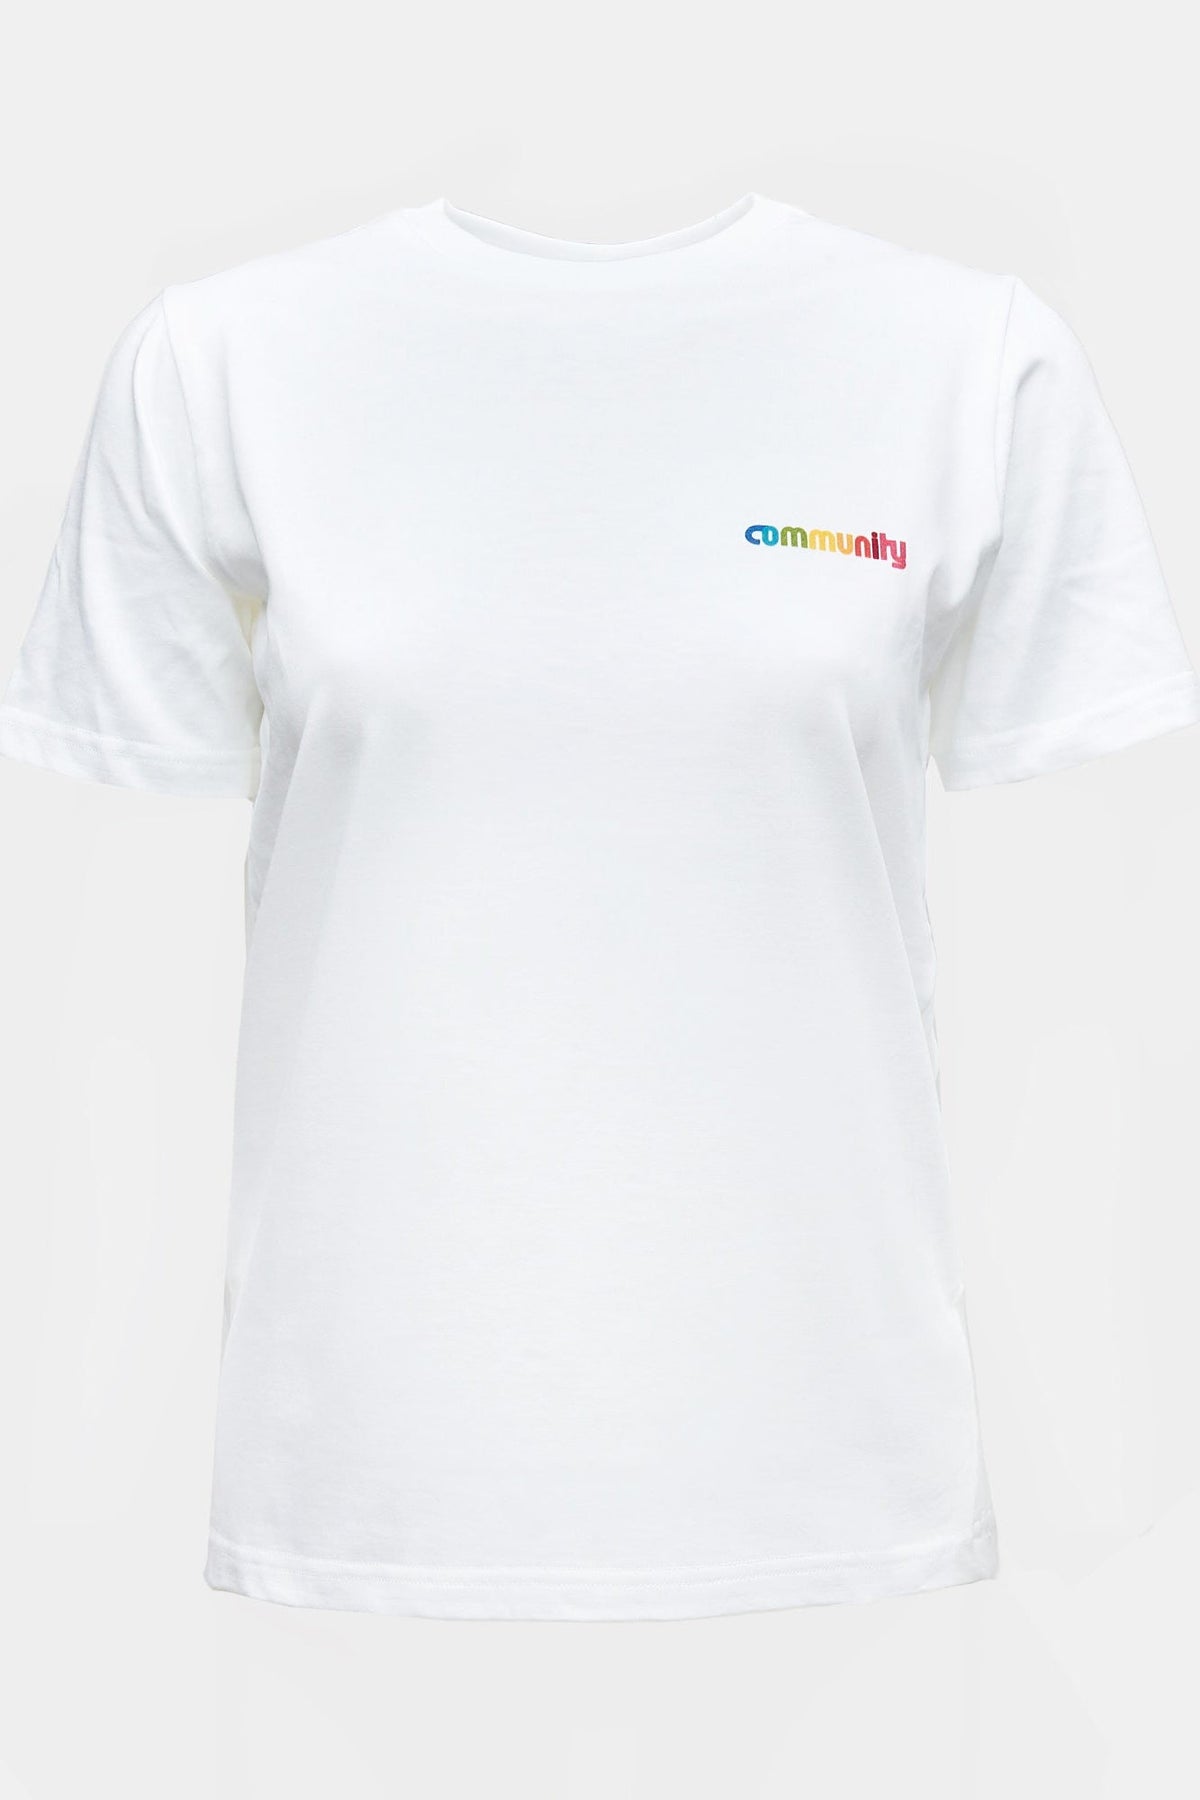 
            Women&#39;s Short Sleeve Logo T Shirt - White/Multi